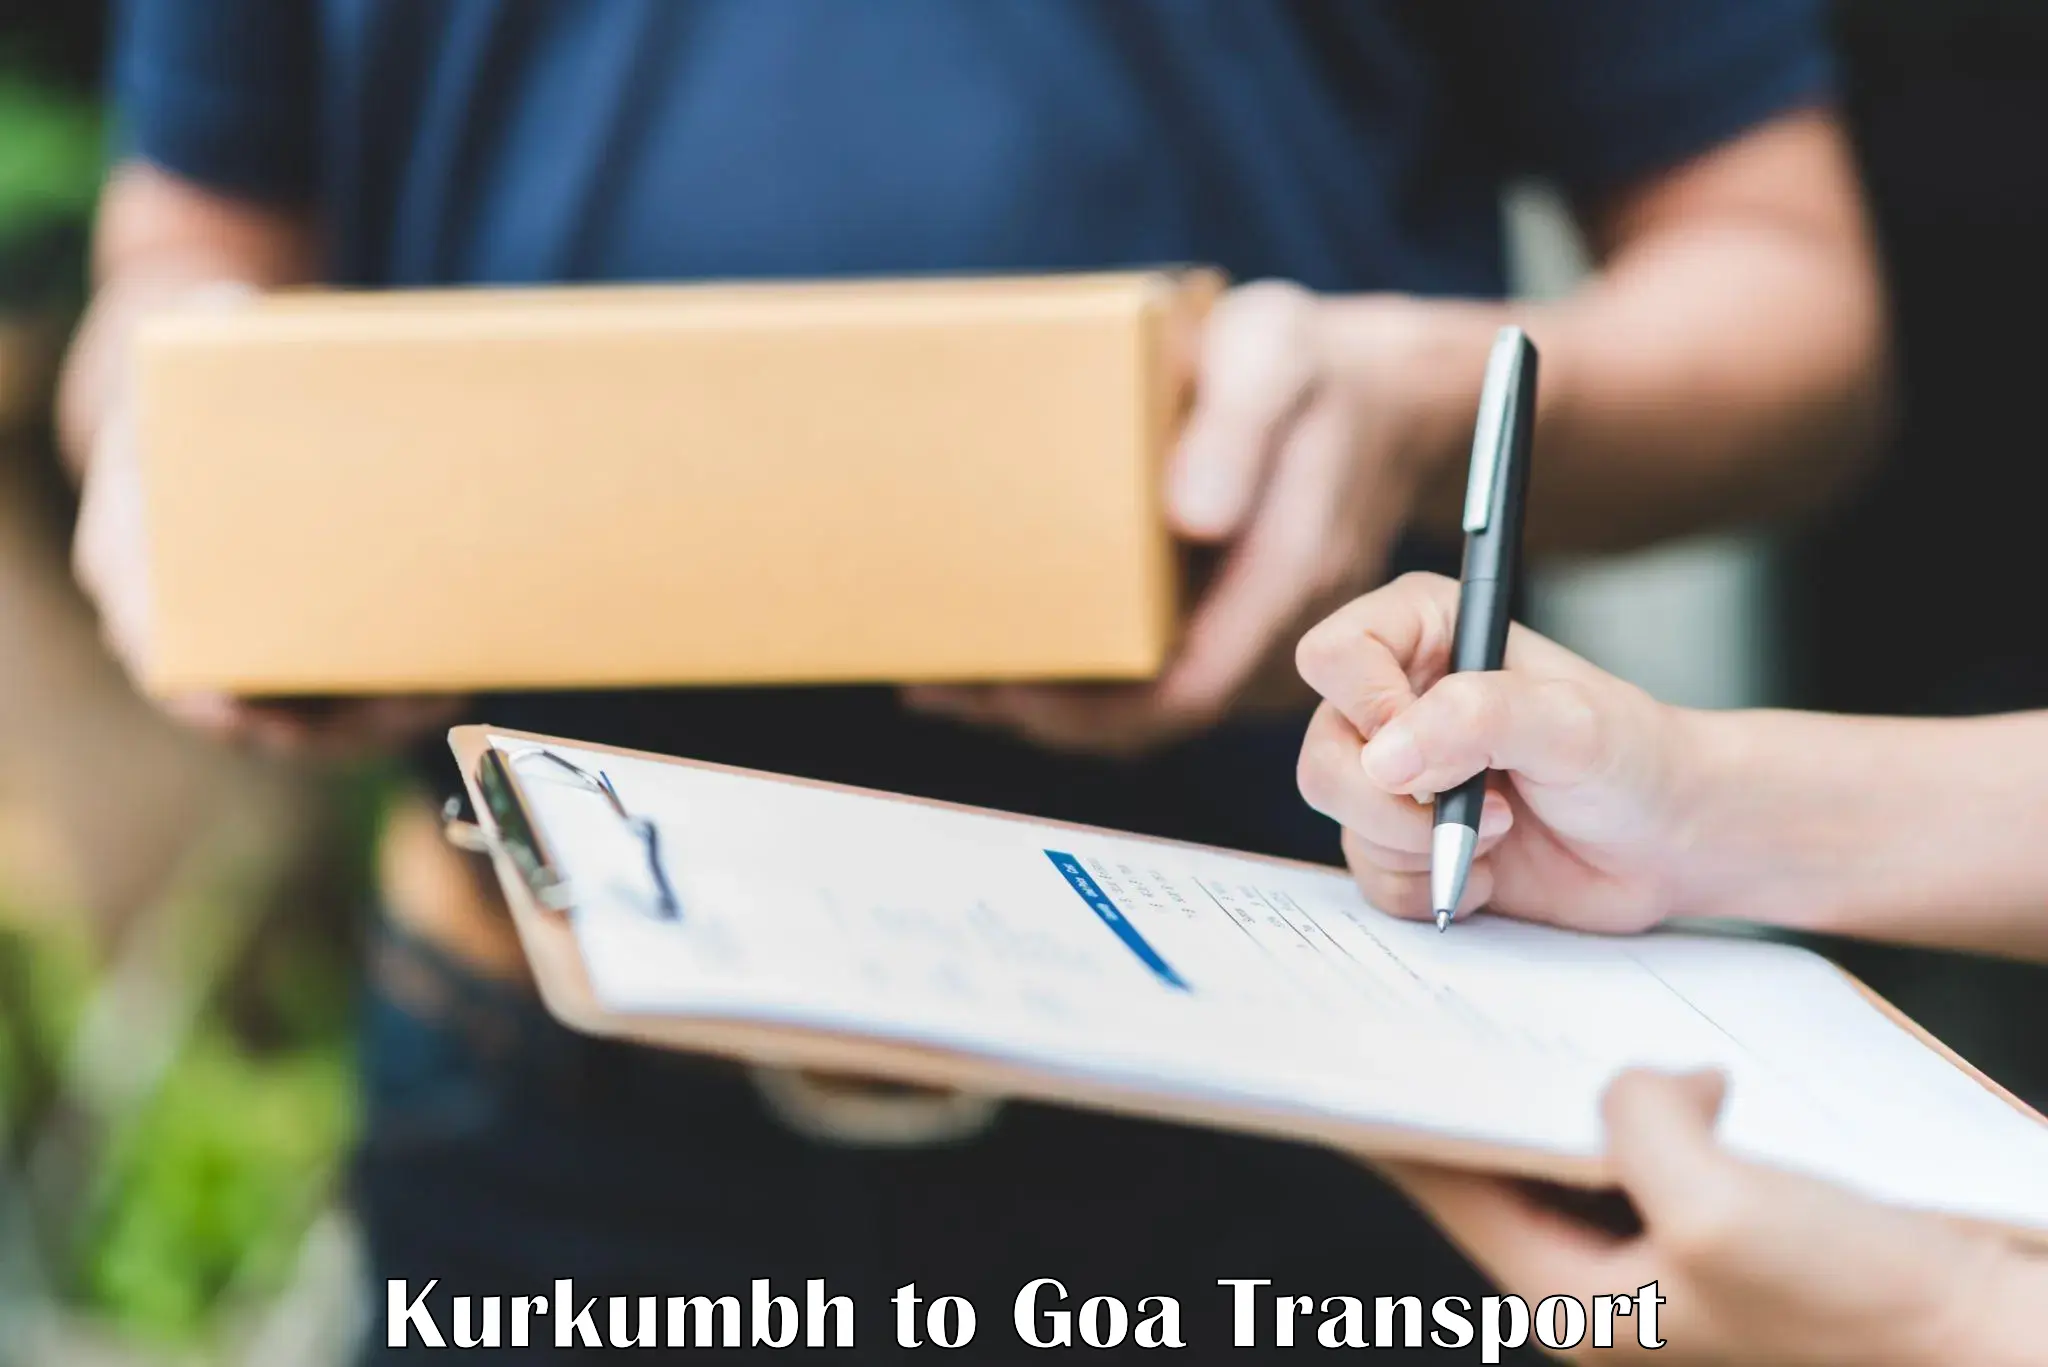 Land transport services in Kurkumbh to IIT Goa